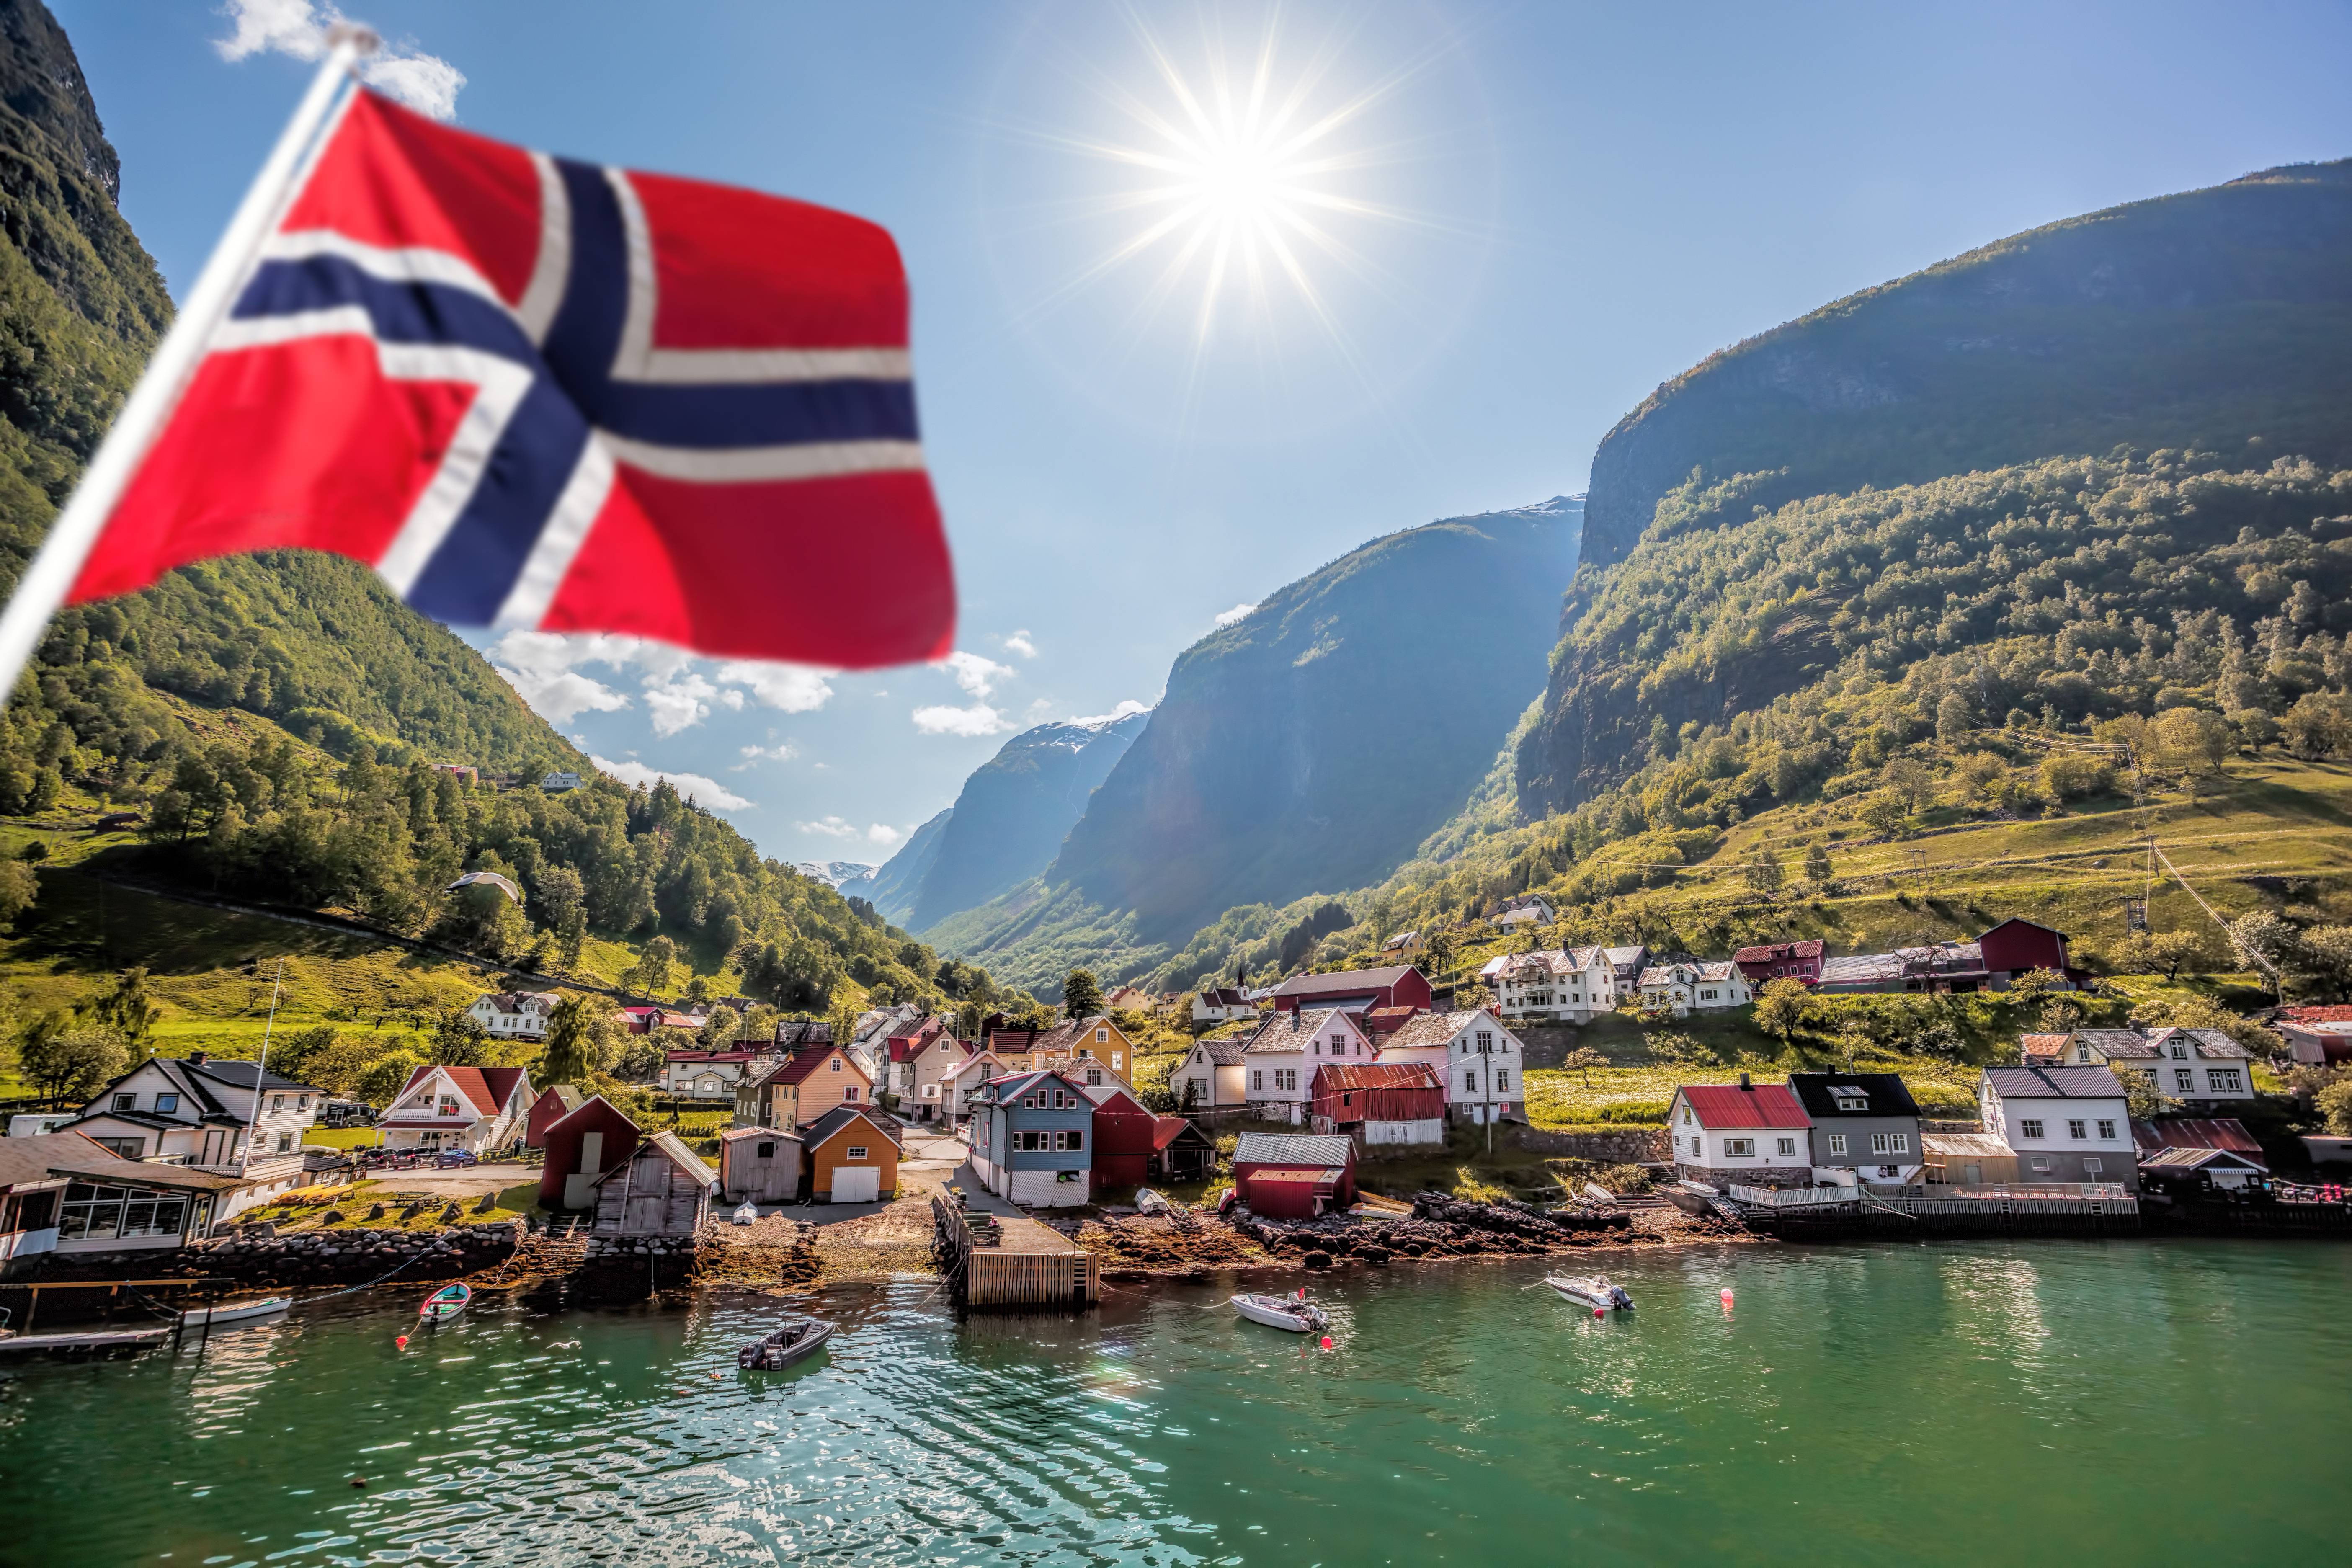 porto villaggio in norvegia con bandiera norvegese